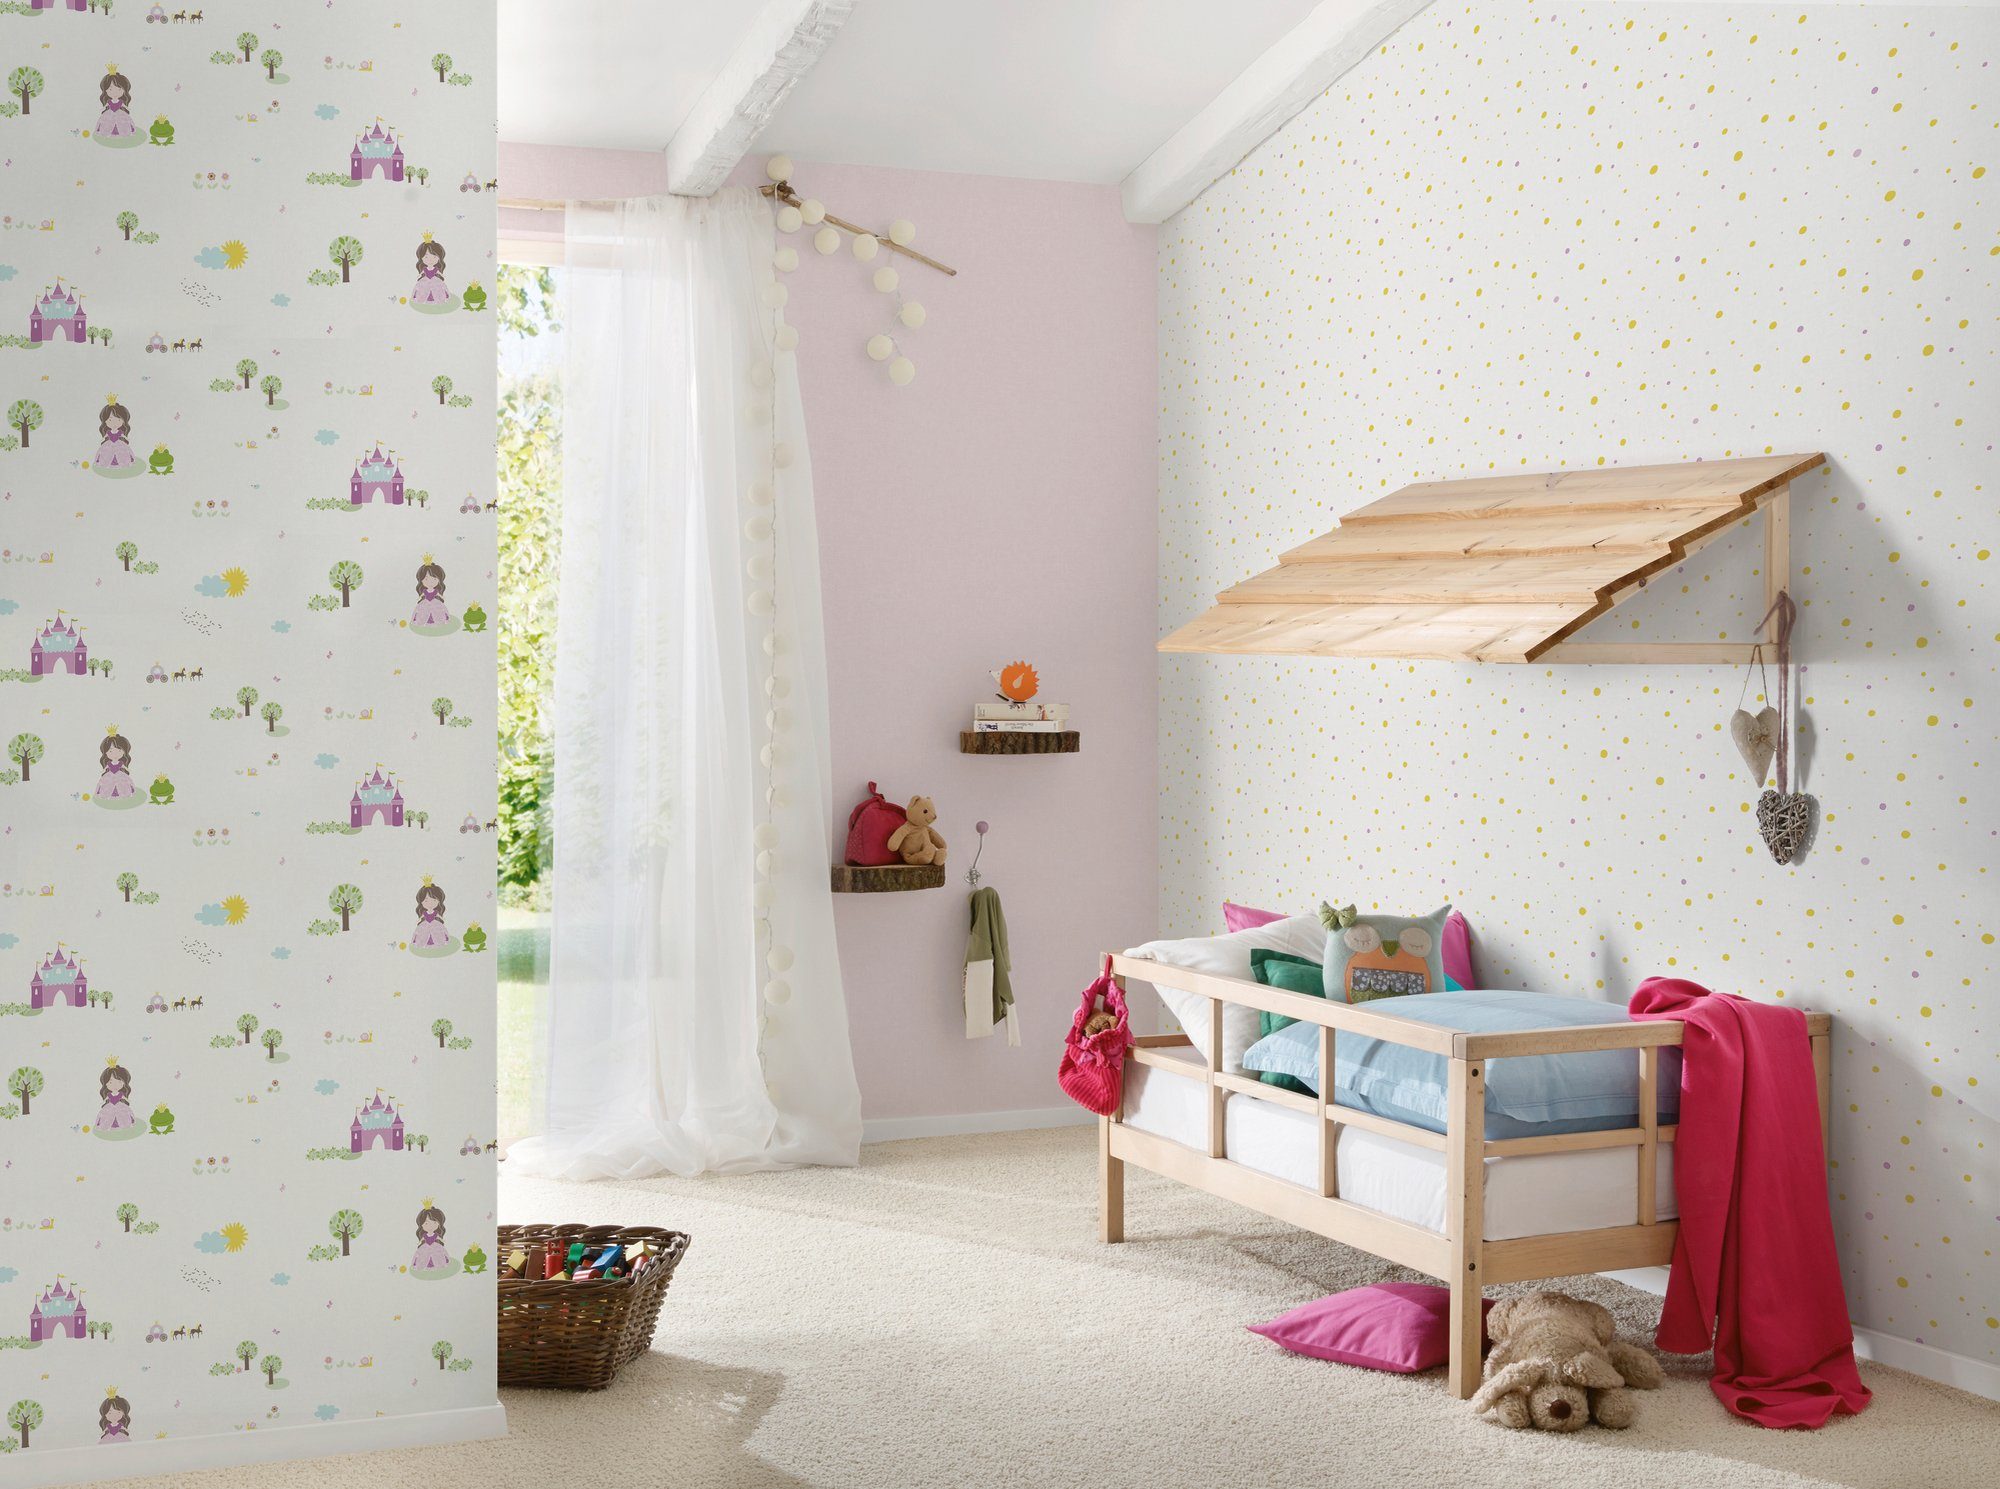 weiß/braun/rosa living Kinderzimmer Little Vliestapete gepunktet, Metallic A.S. Stars, glatt, Tapete walls Création Punkte